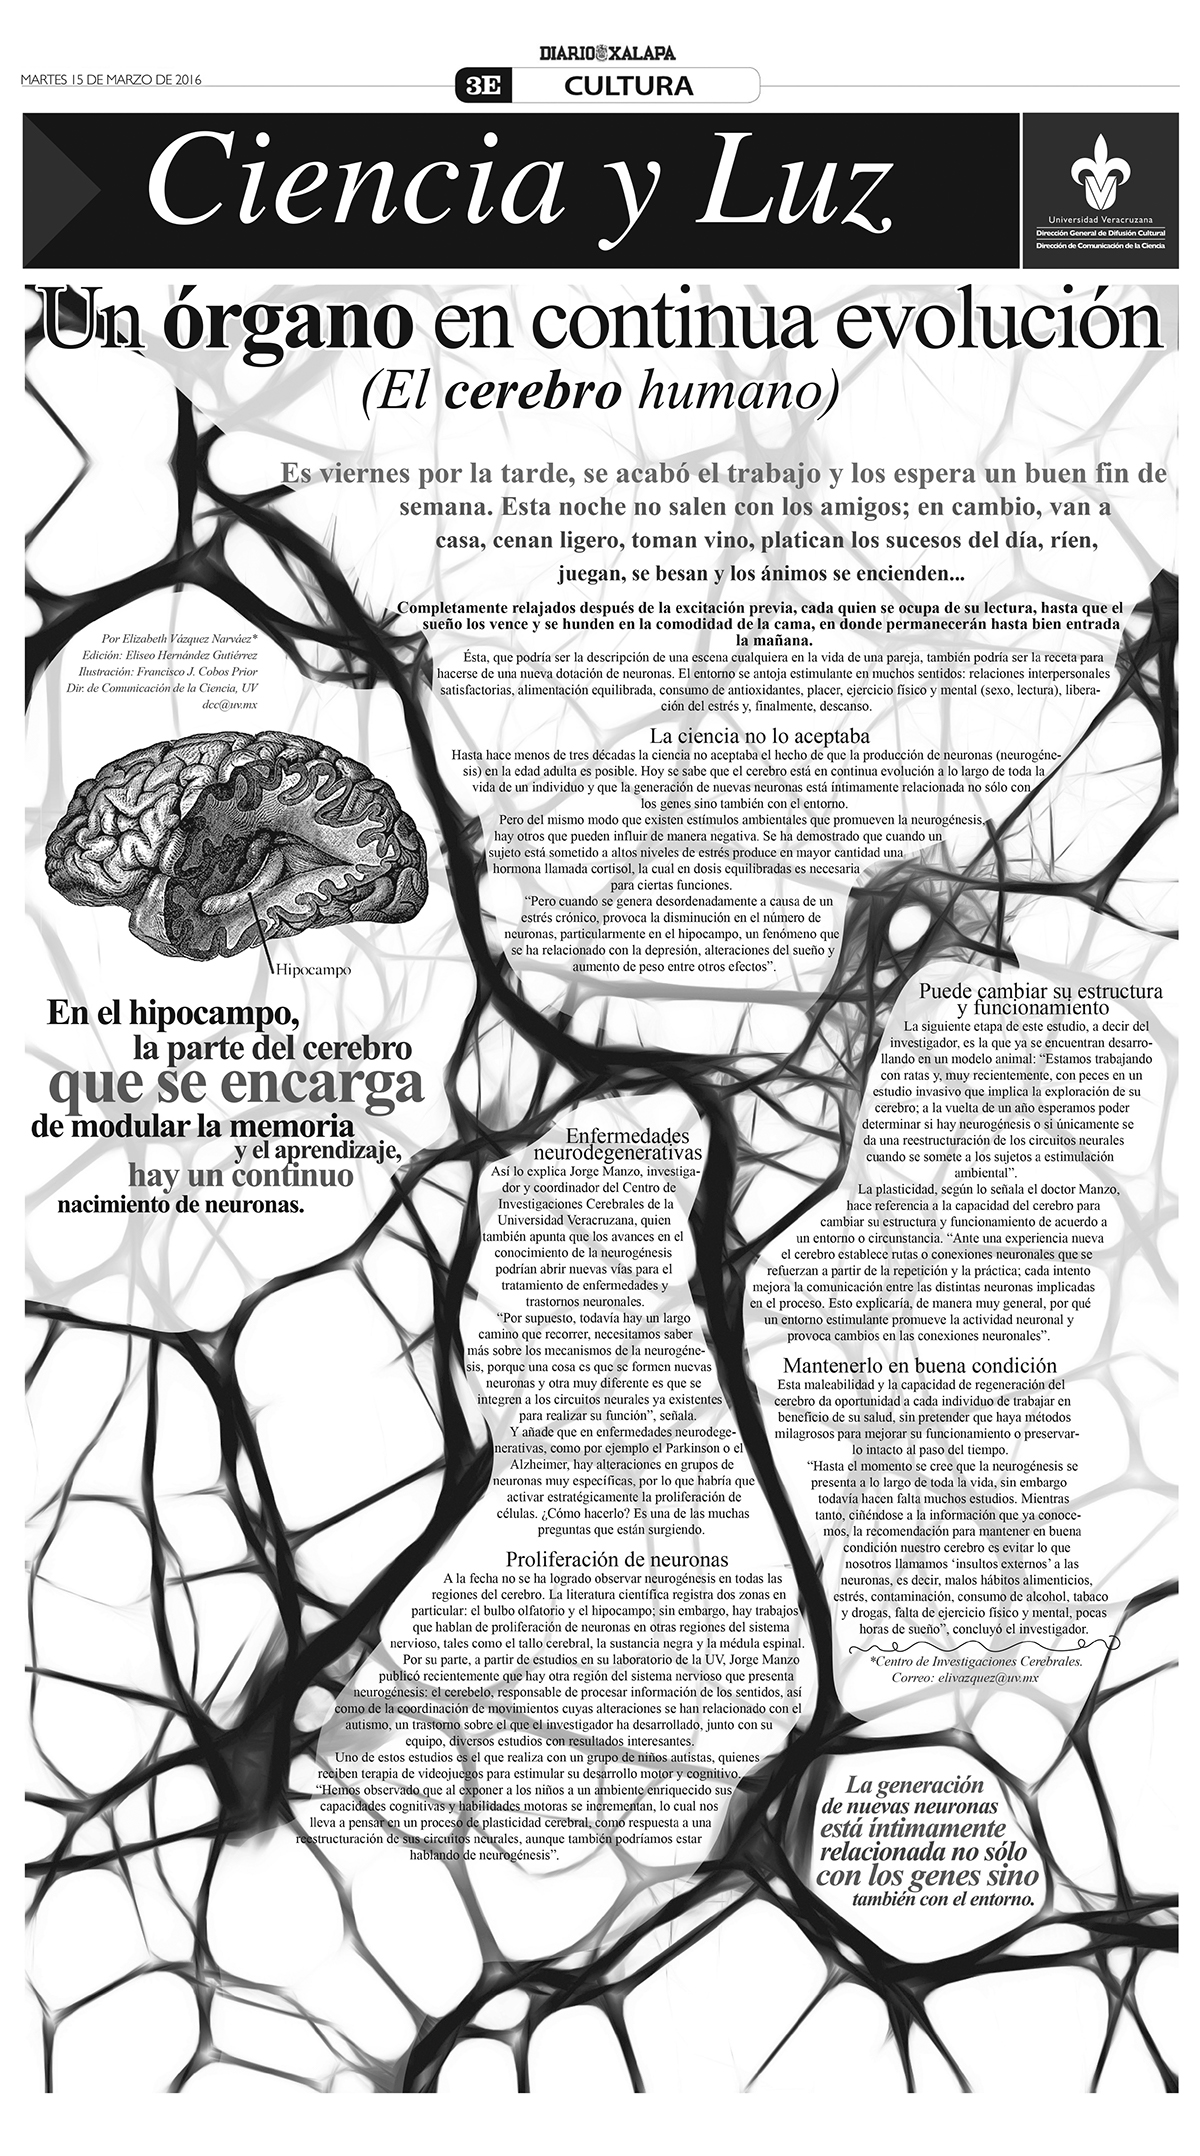 Diseño editorial diseño gráfico divulgación de la ciencia divulgacion cientifica Periodismo veracruz mexico xalapa